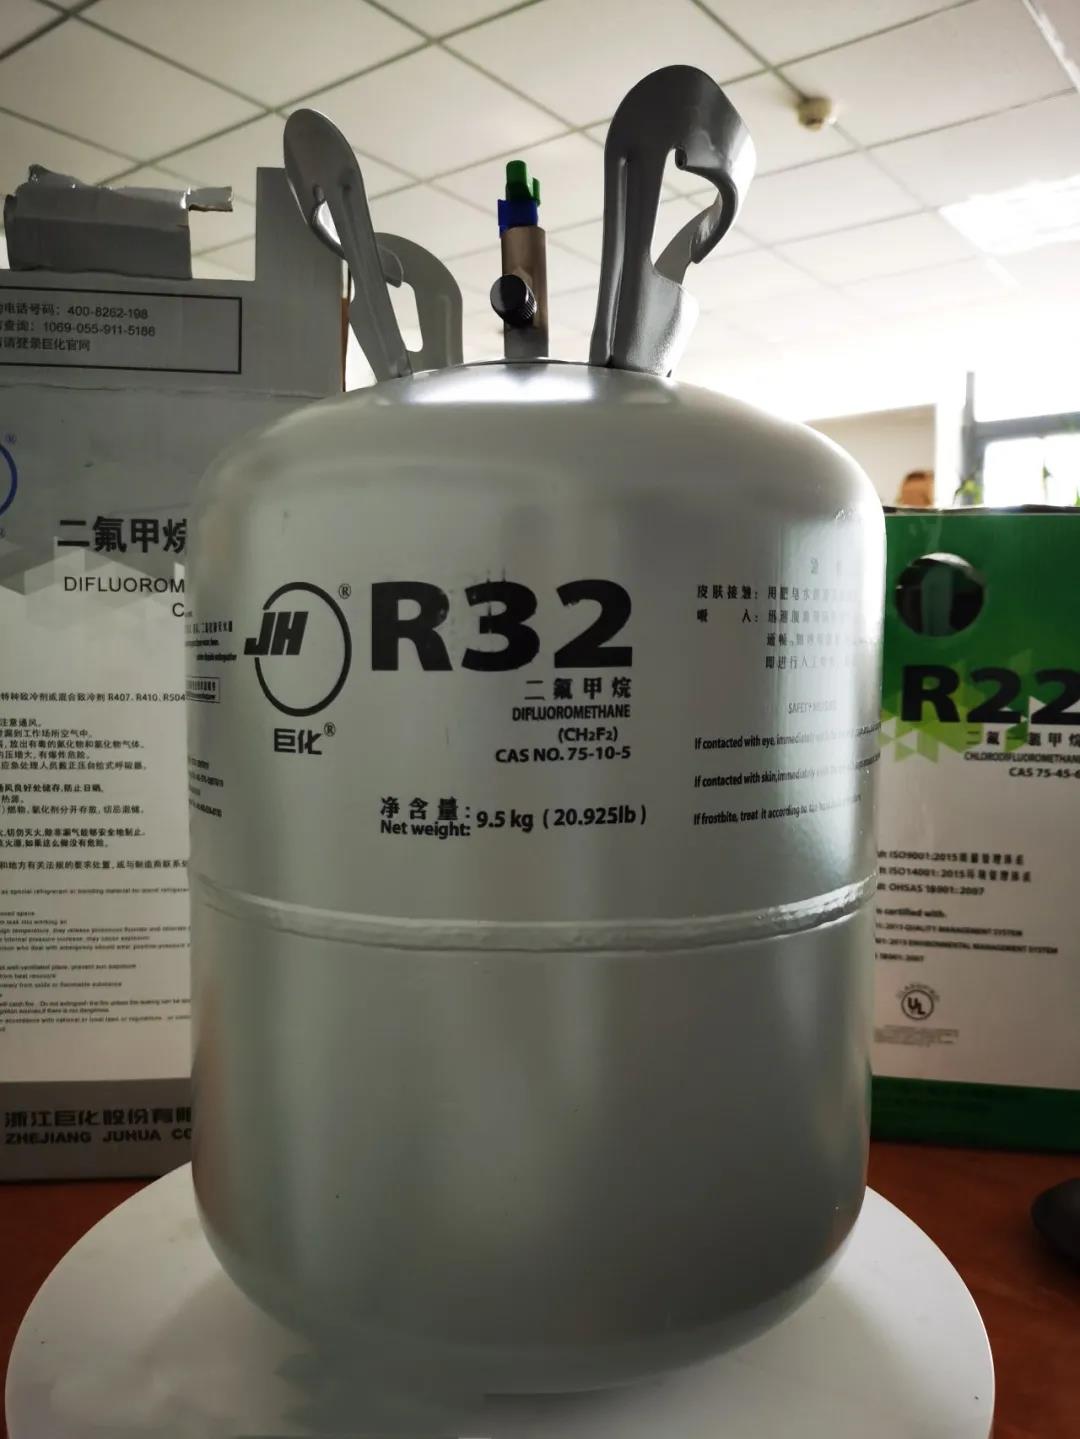 巨化牌”R32制冷剂又出新包装啦